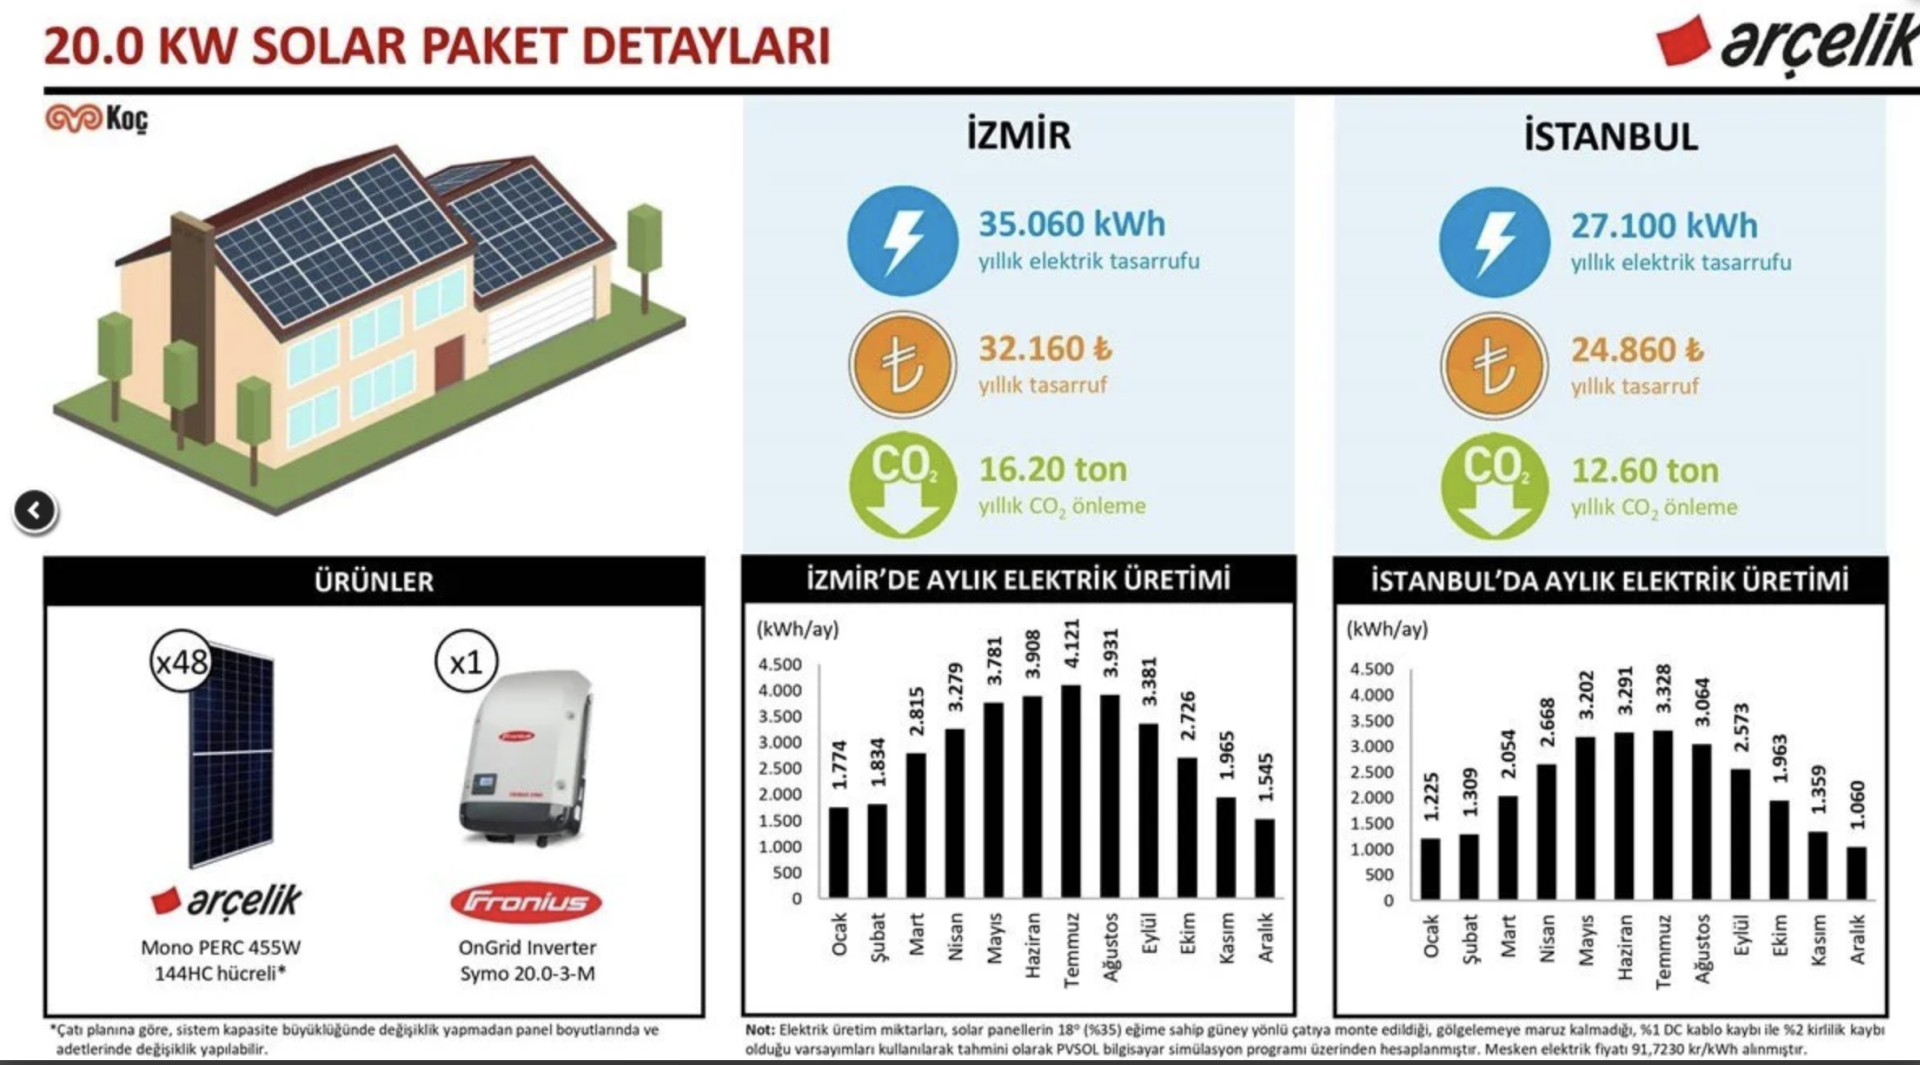 20.0 kW Solar Paket ve Yapı Kredi Leasing